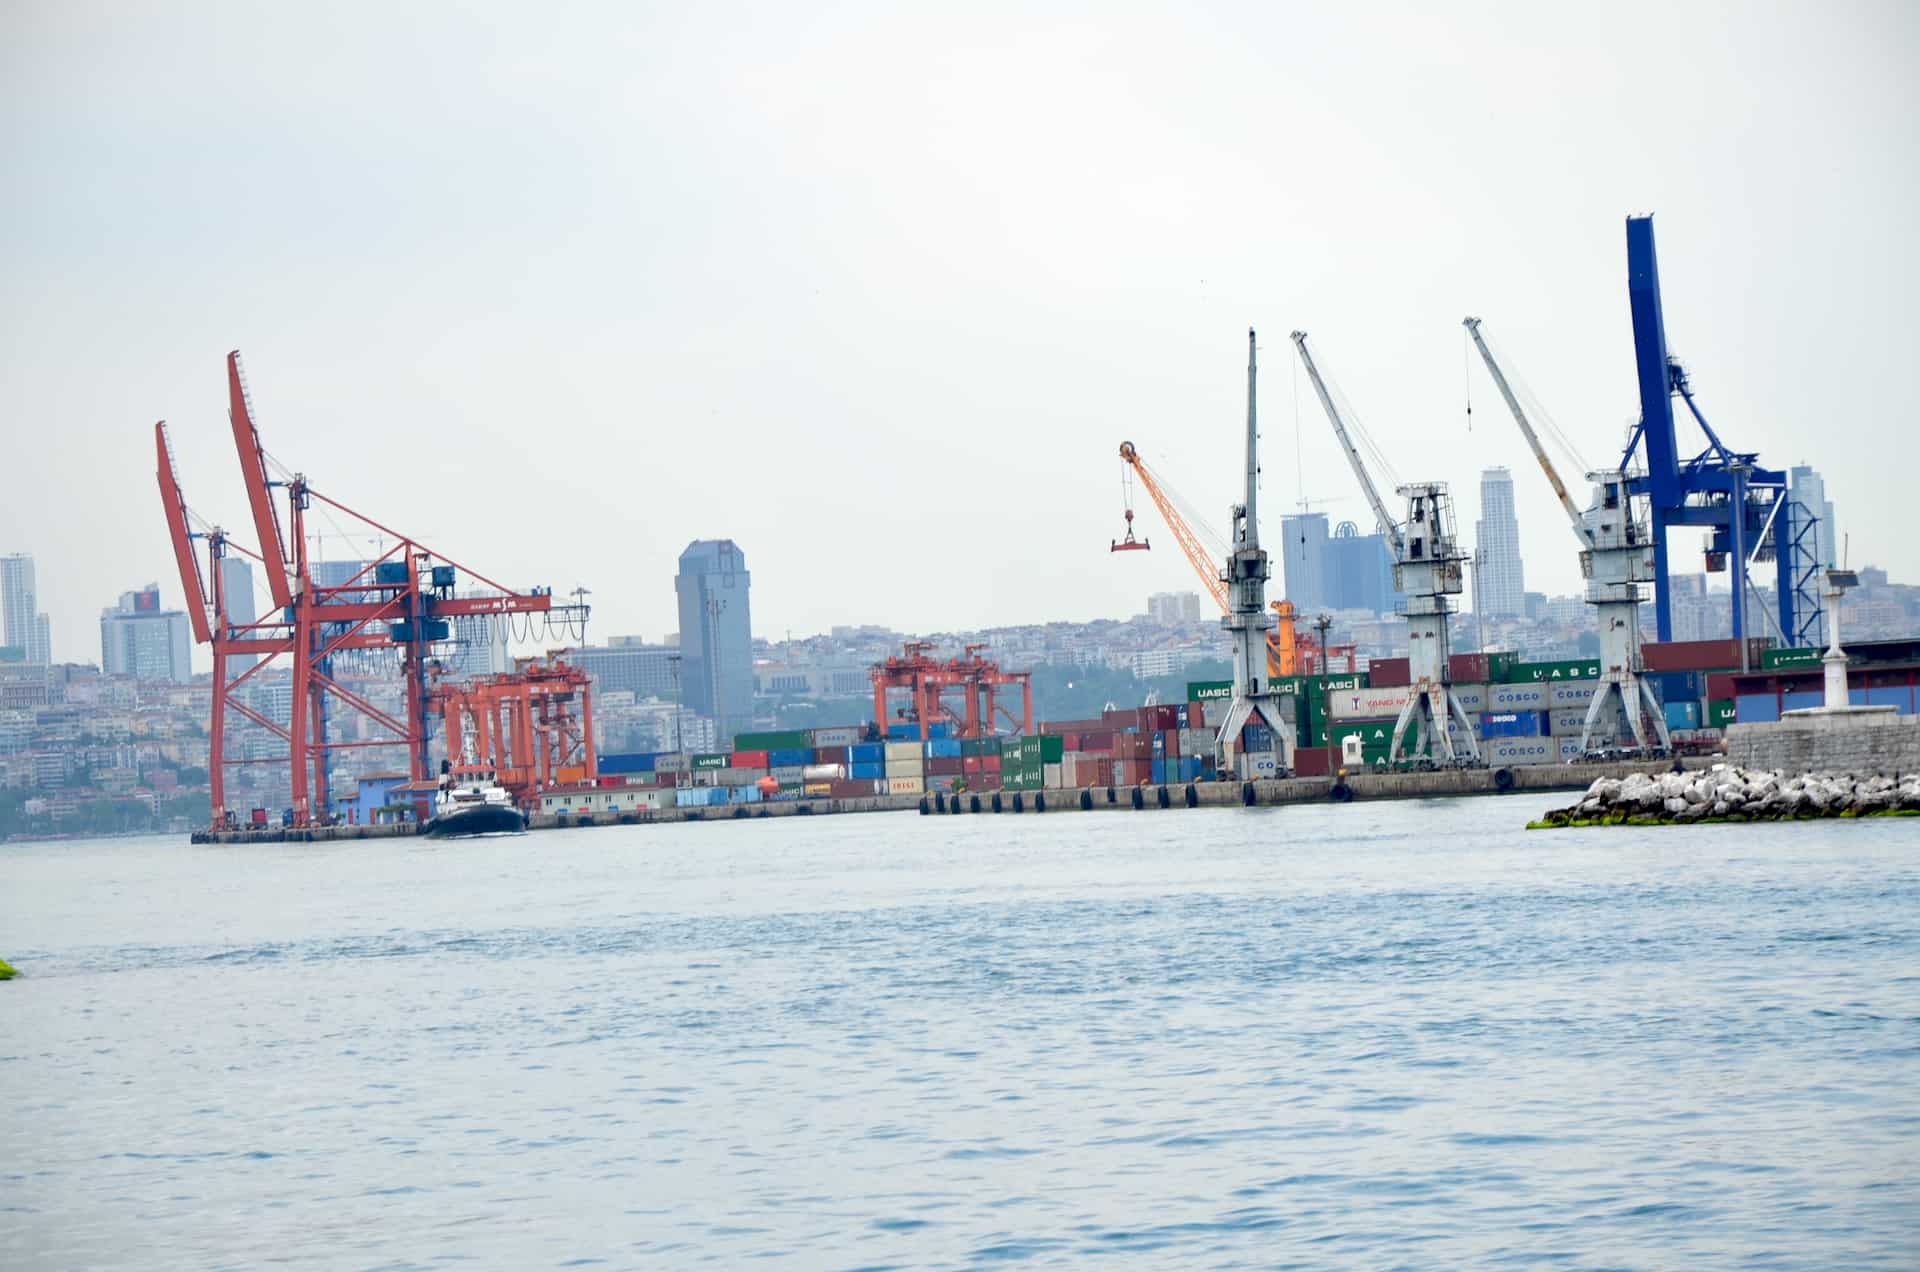 Port of Haydarpaşa in Selimiye, Üsküdar, Istanbul, Turkey